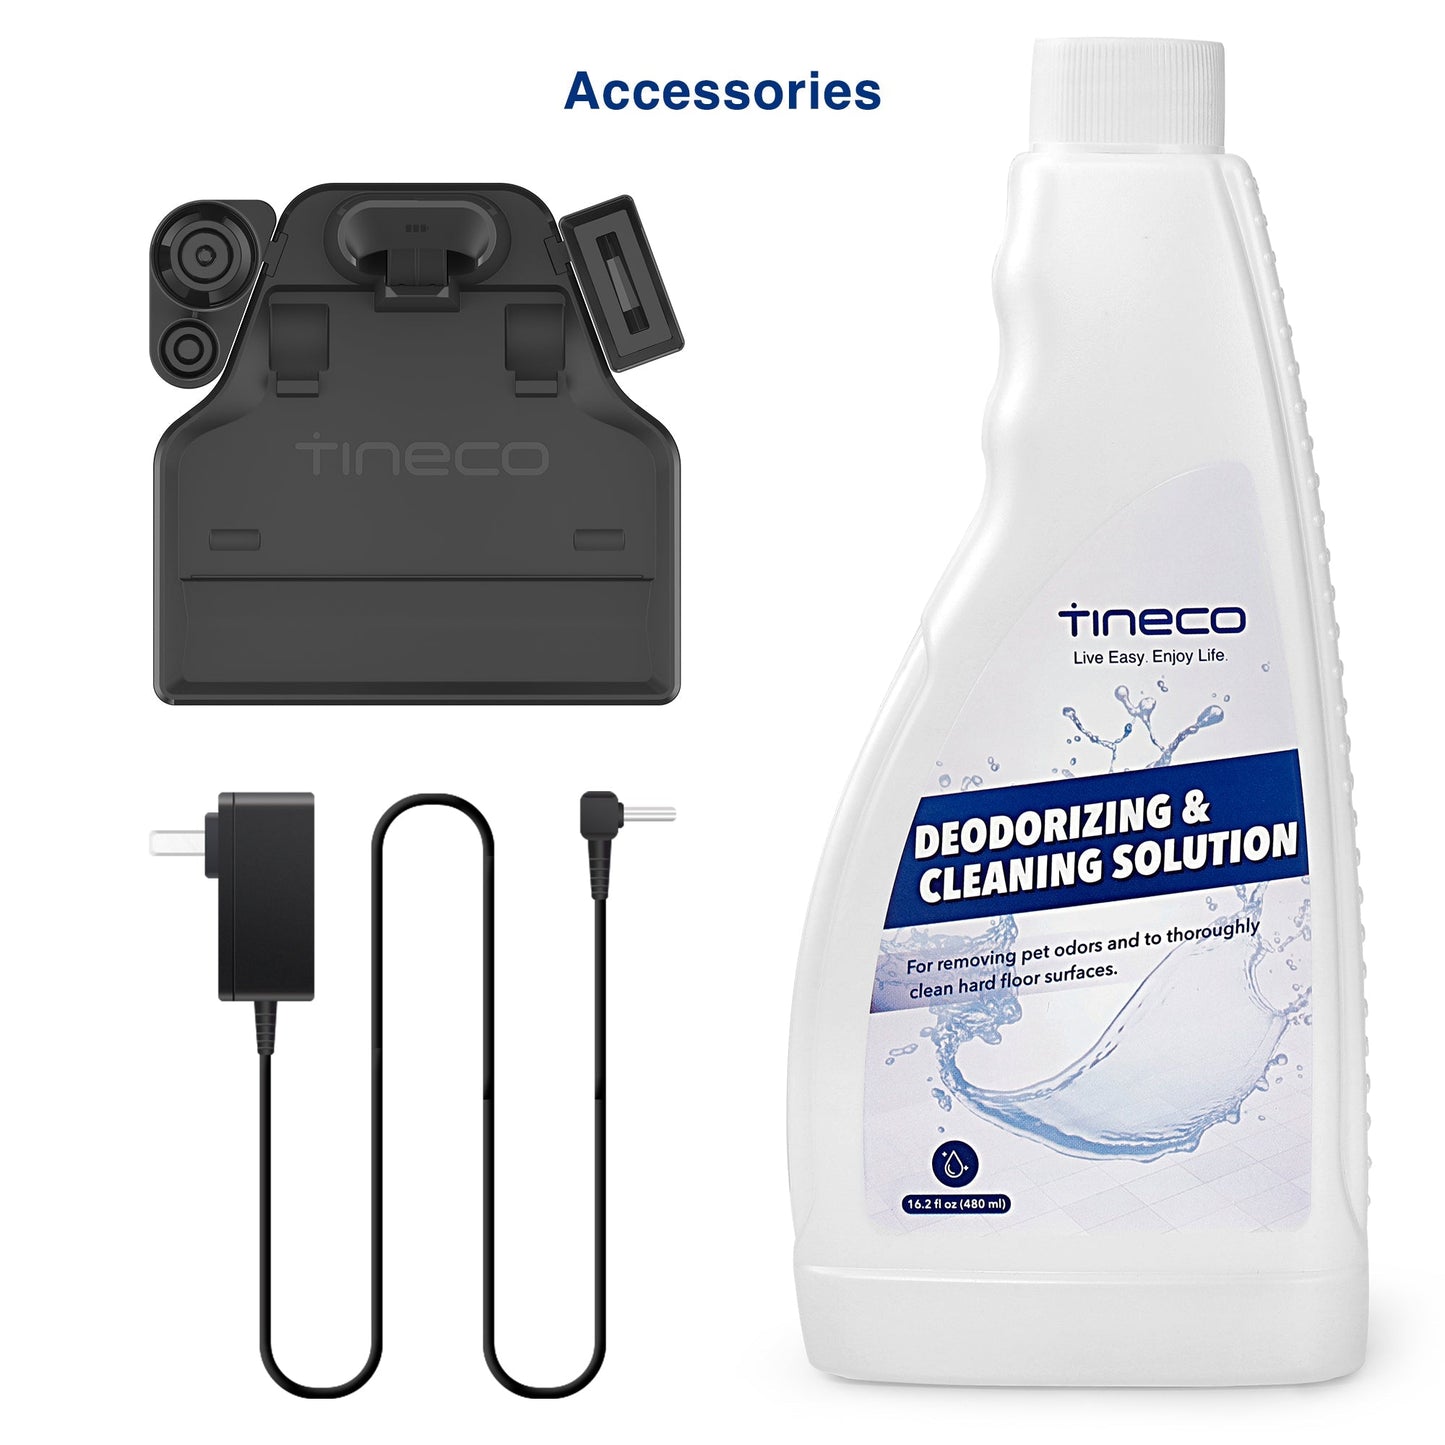 Tineco iFLOOR Breeze – 20min Wet Dry Vacuum Cordless Floor Washer Mop Stick - UNBOXED DEAL